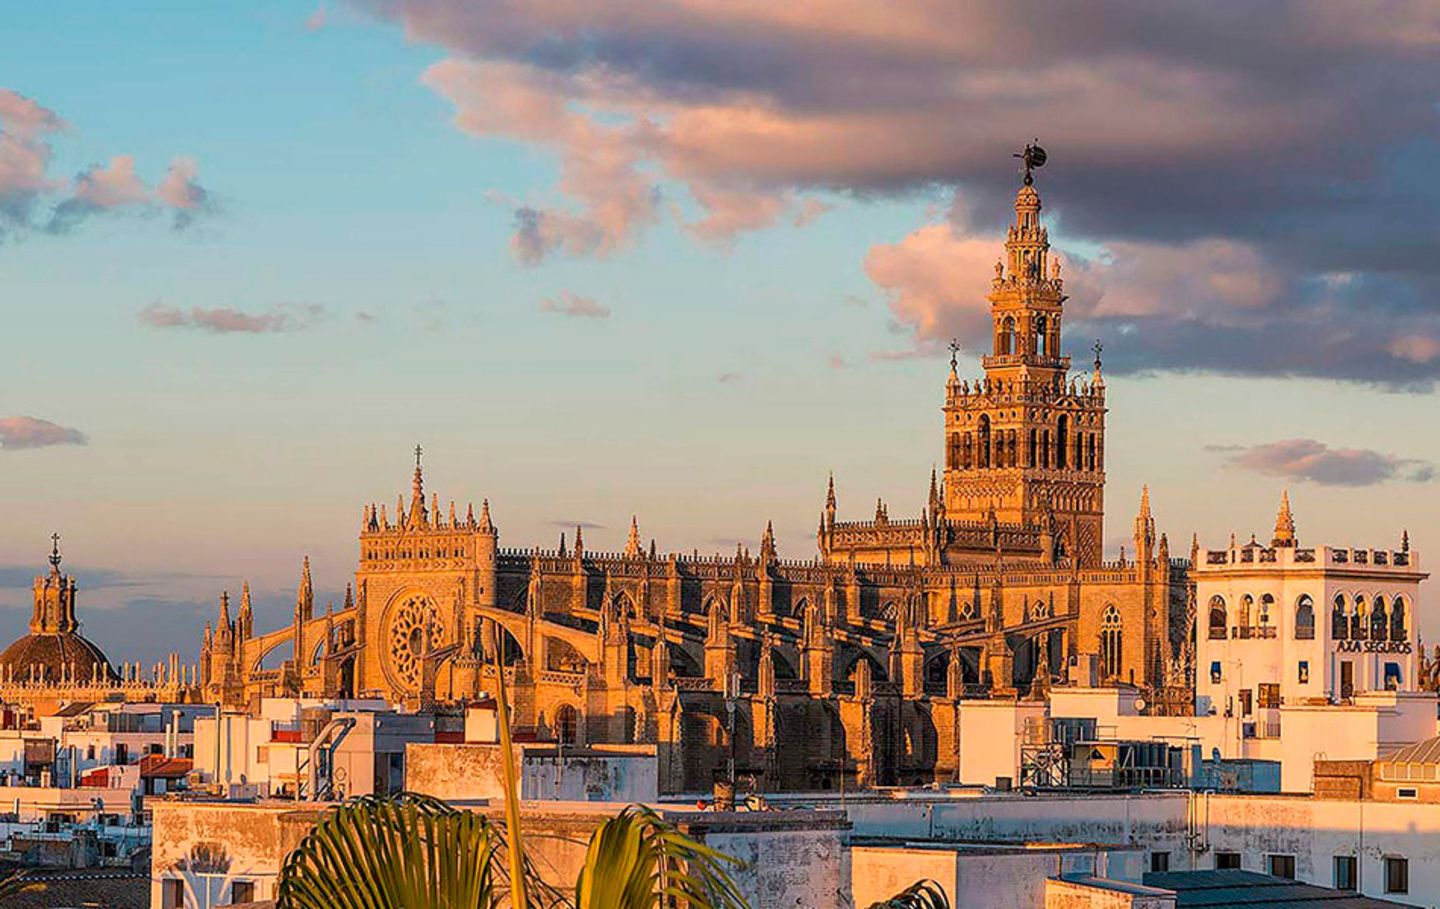 Descubra La Giralda y la Catedral de Sevilla